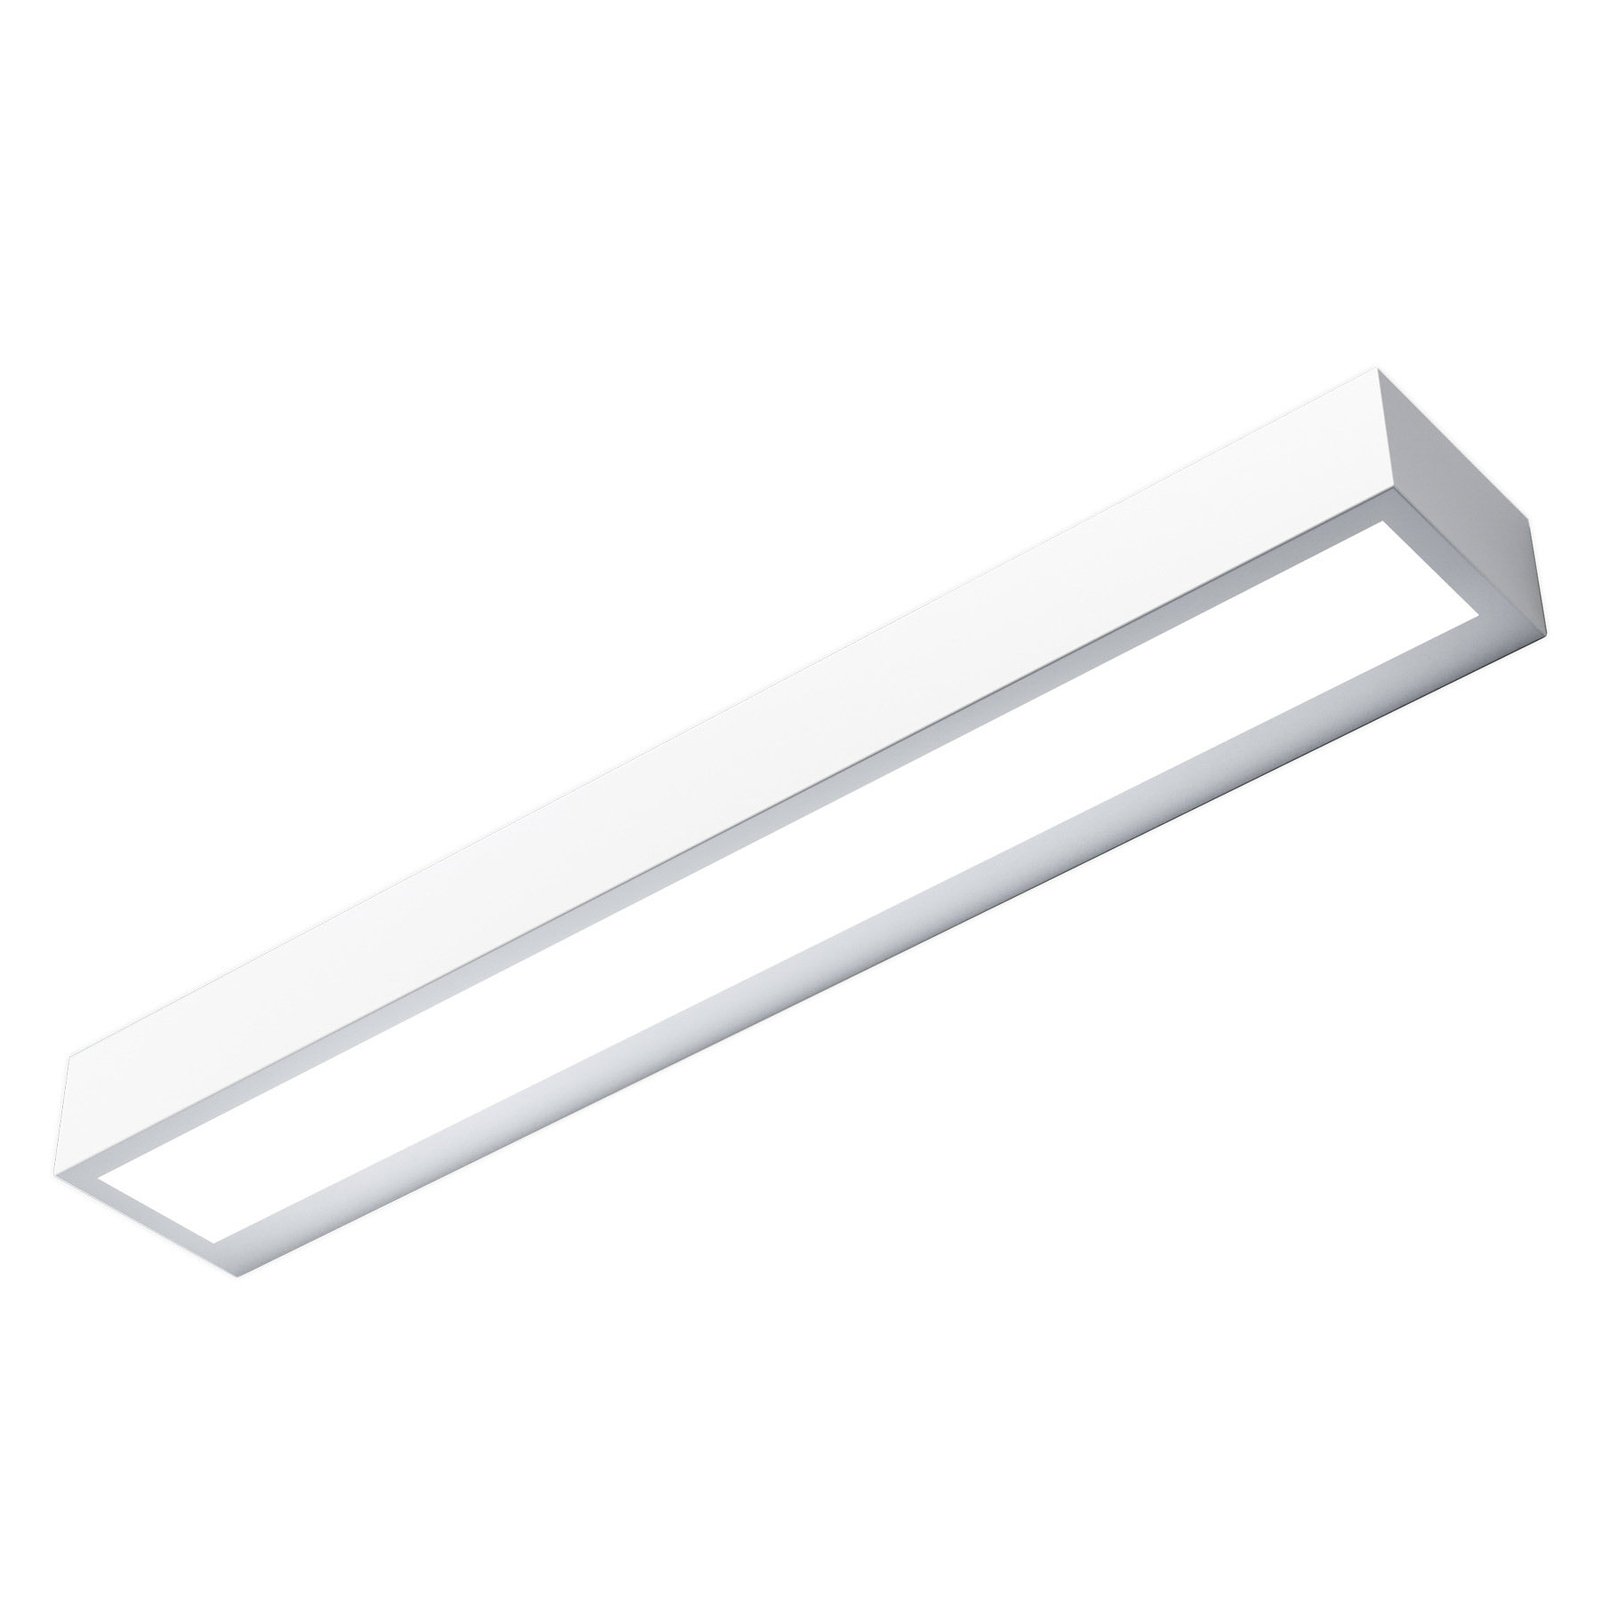 Mera LED wall light, width 40 cm, white, 3,000K